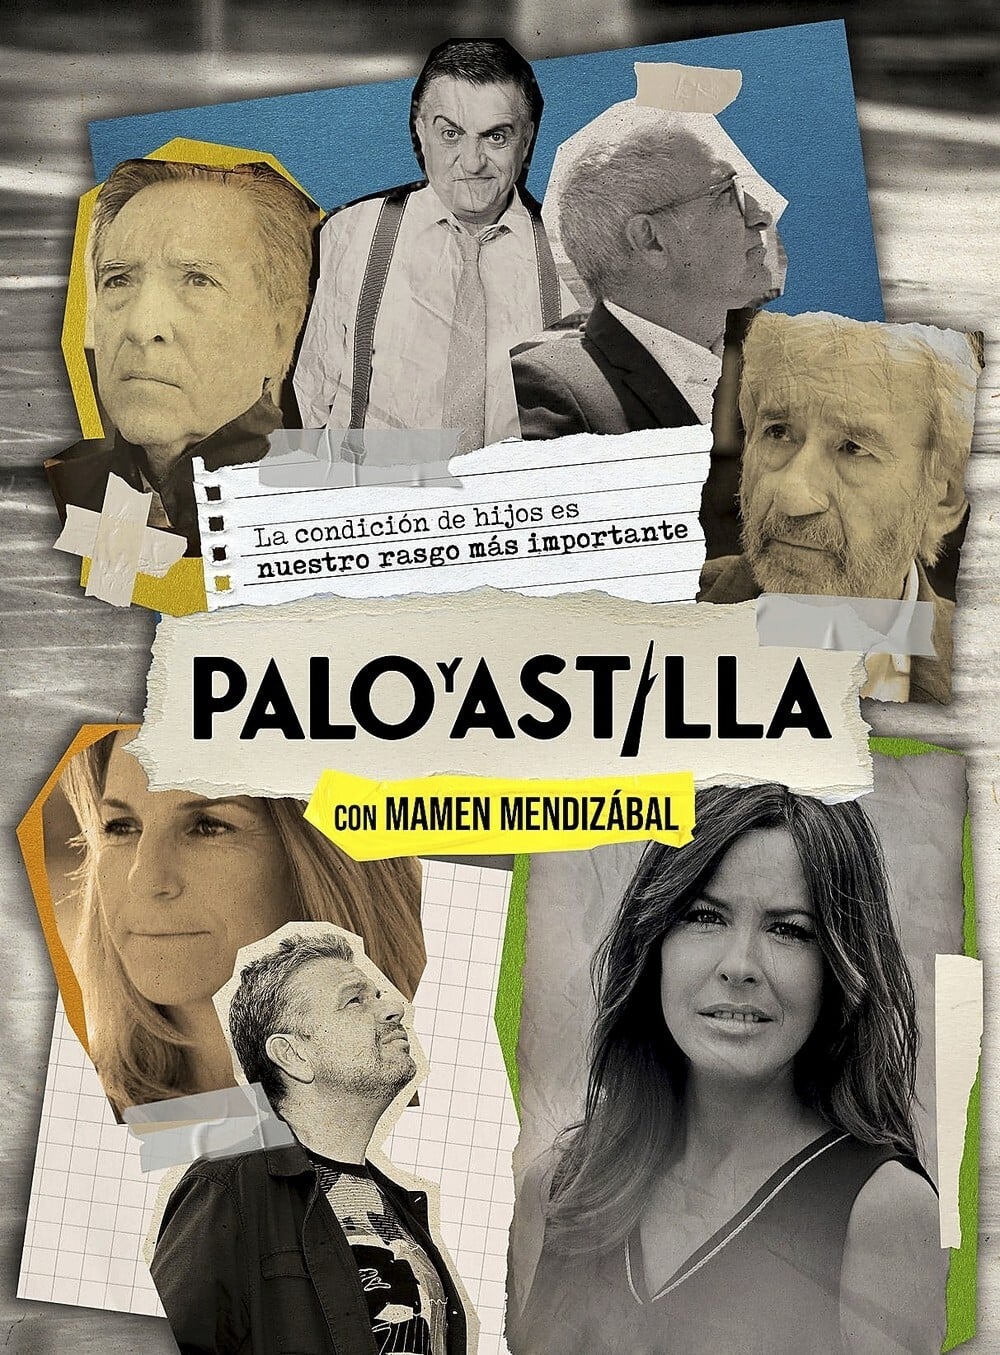 Palo y Astilla